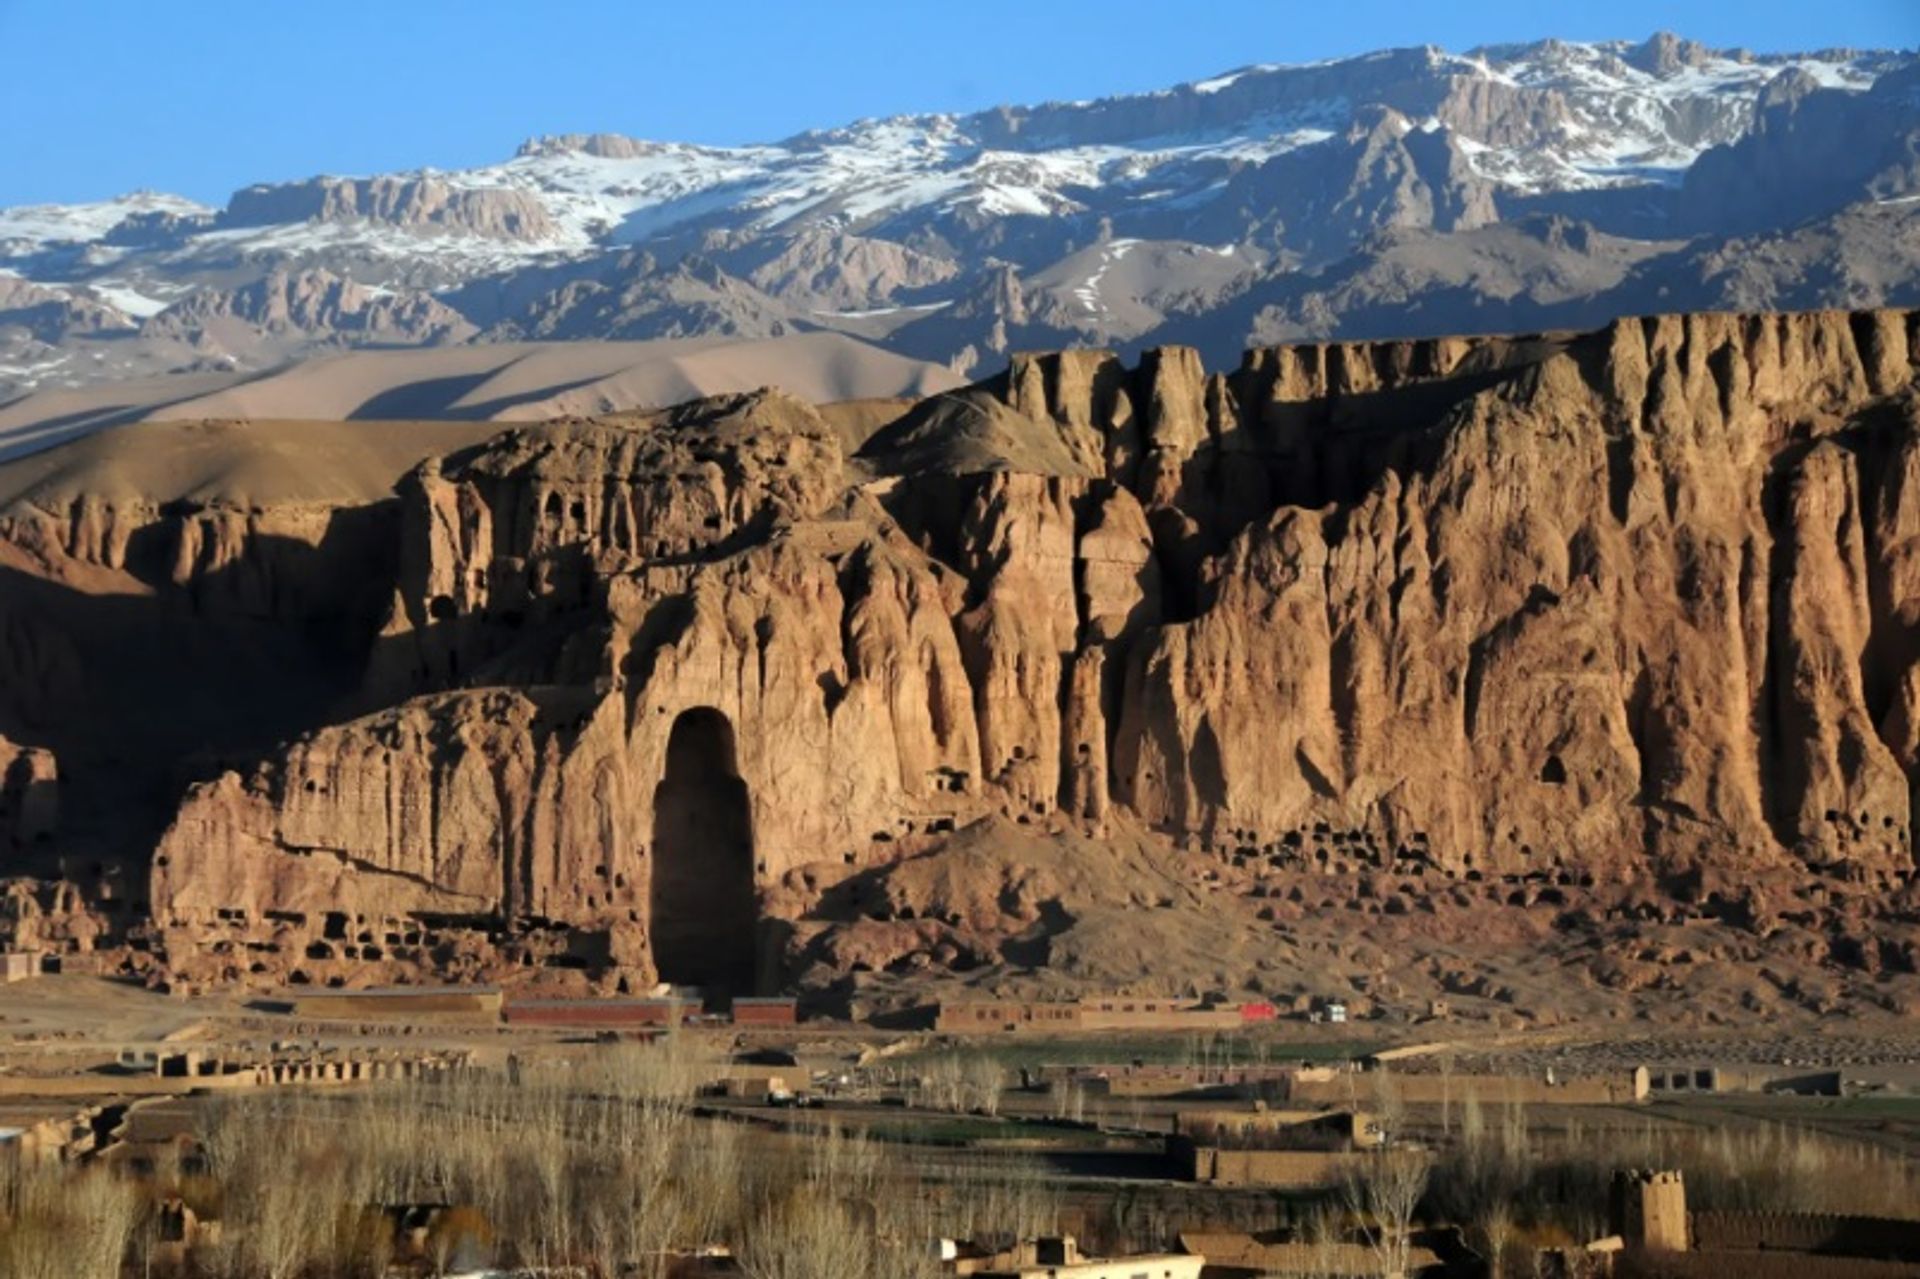 עמק במיאן

צילום מאת Afghanistan Matters, באמצעות Wikimedia Commons